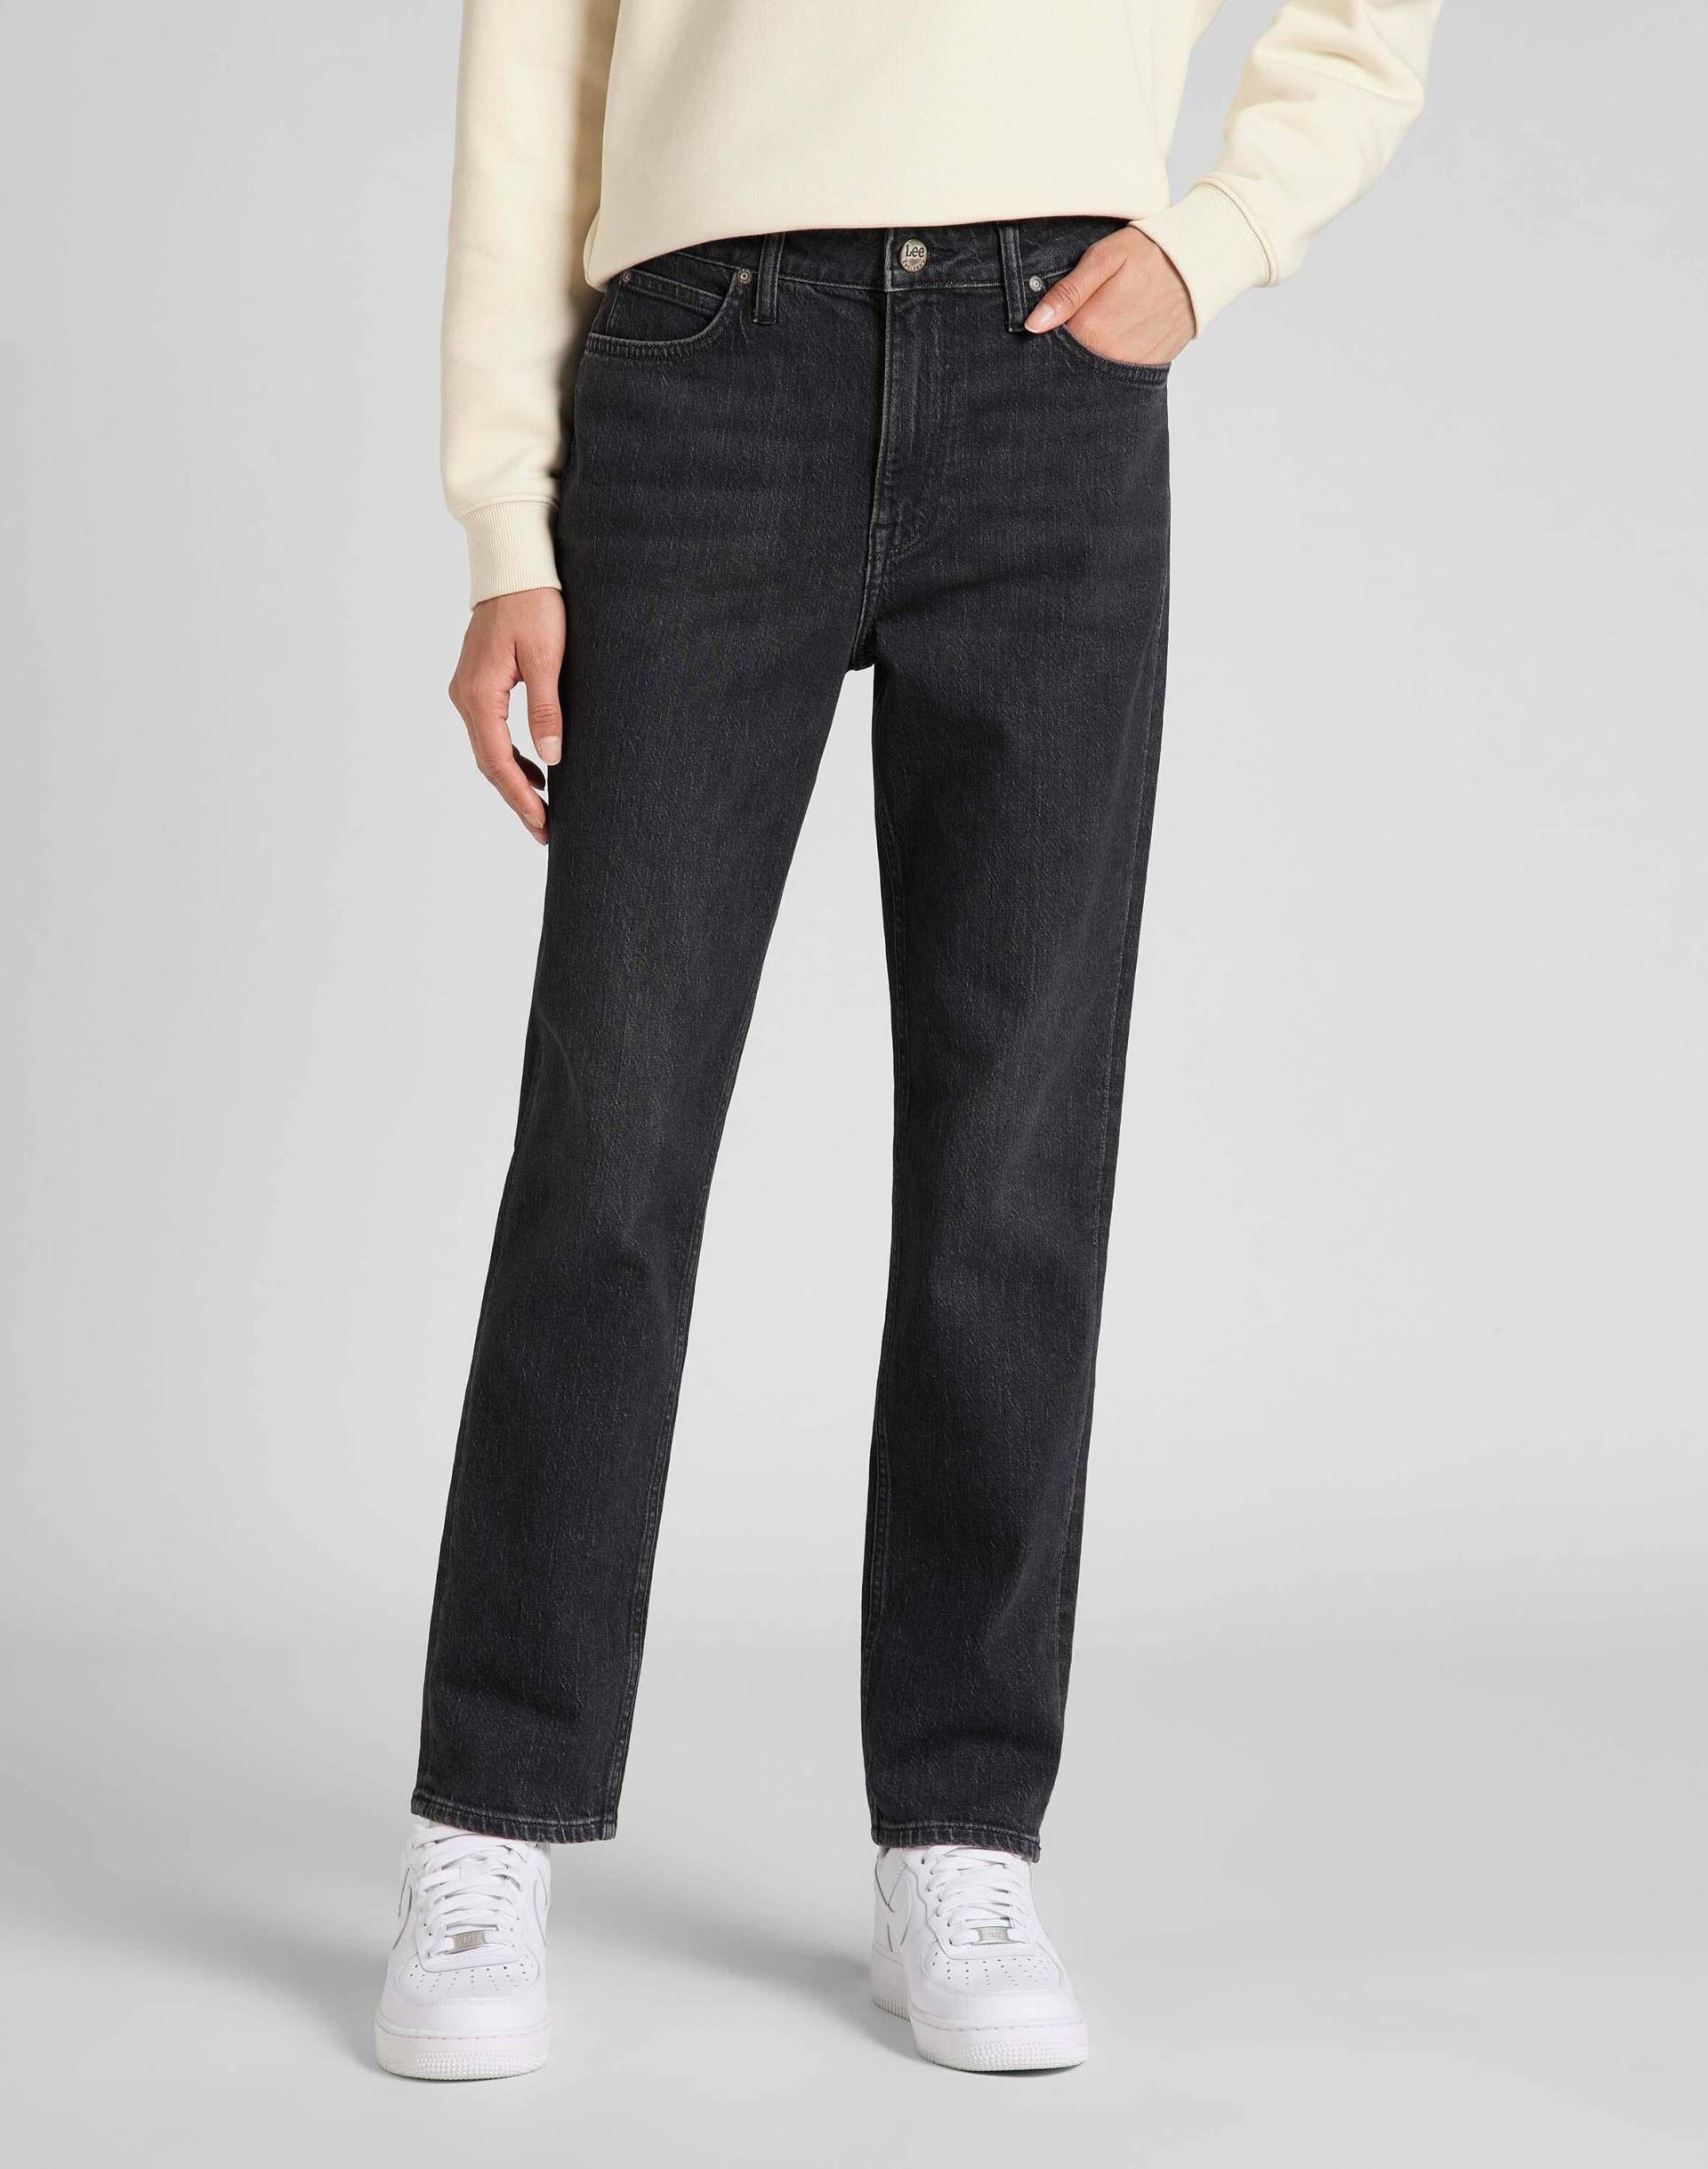 Jeans Straight Leg Carol Damen Schwarz L31/W30 von Lee